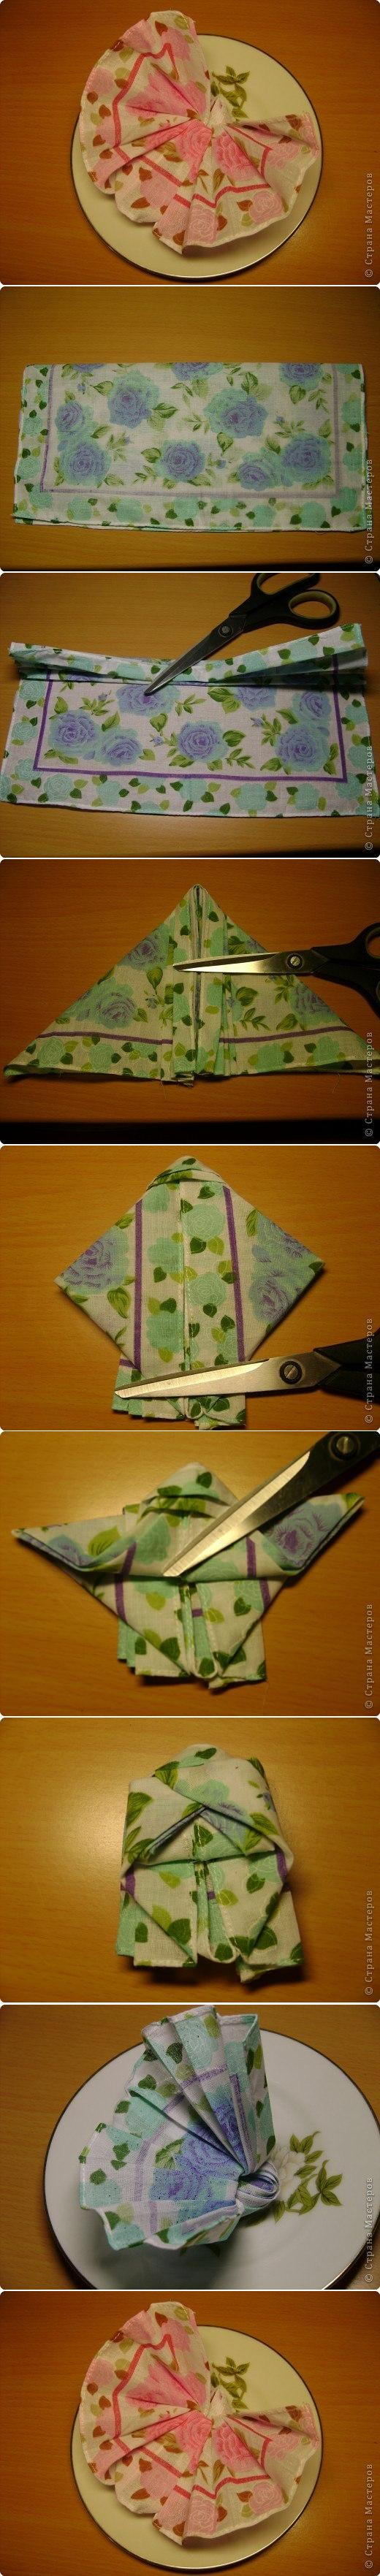 DIY Butterfly Napkin Fold 2